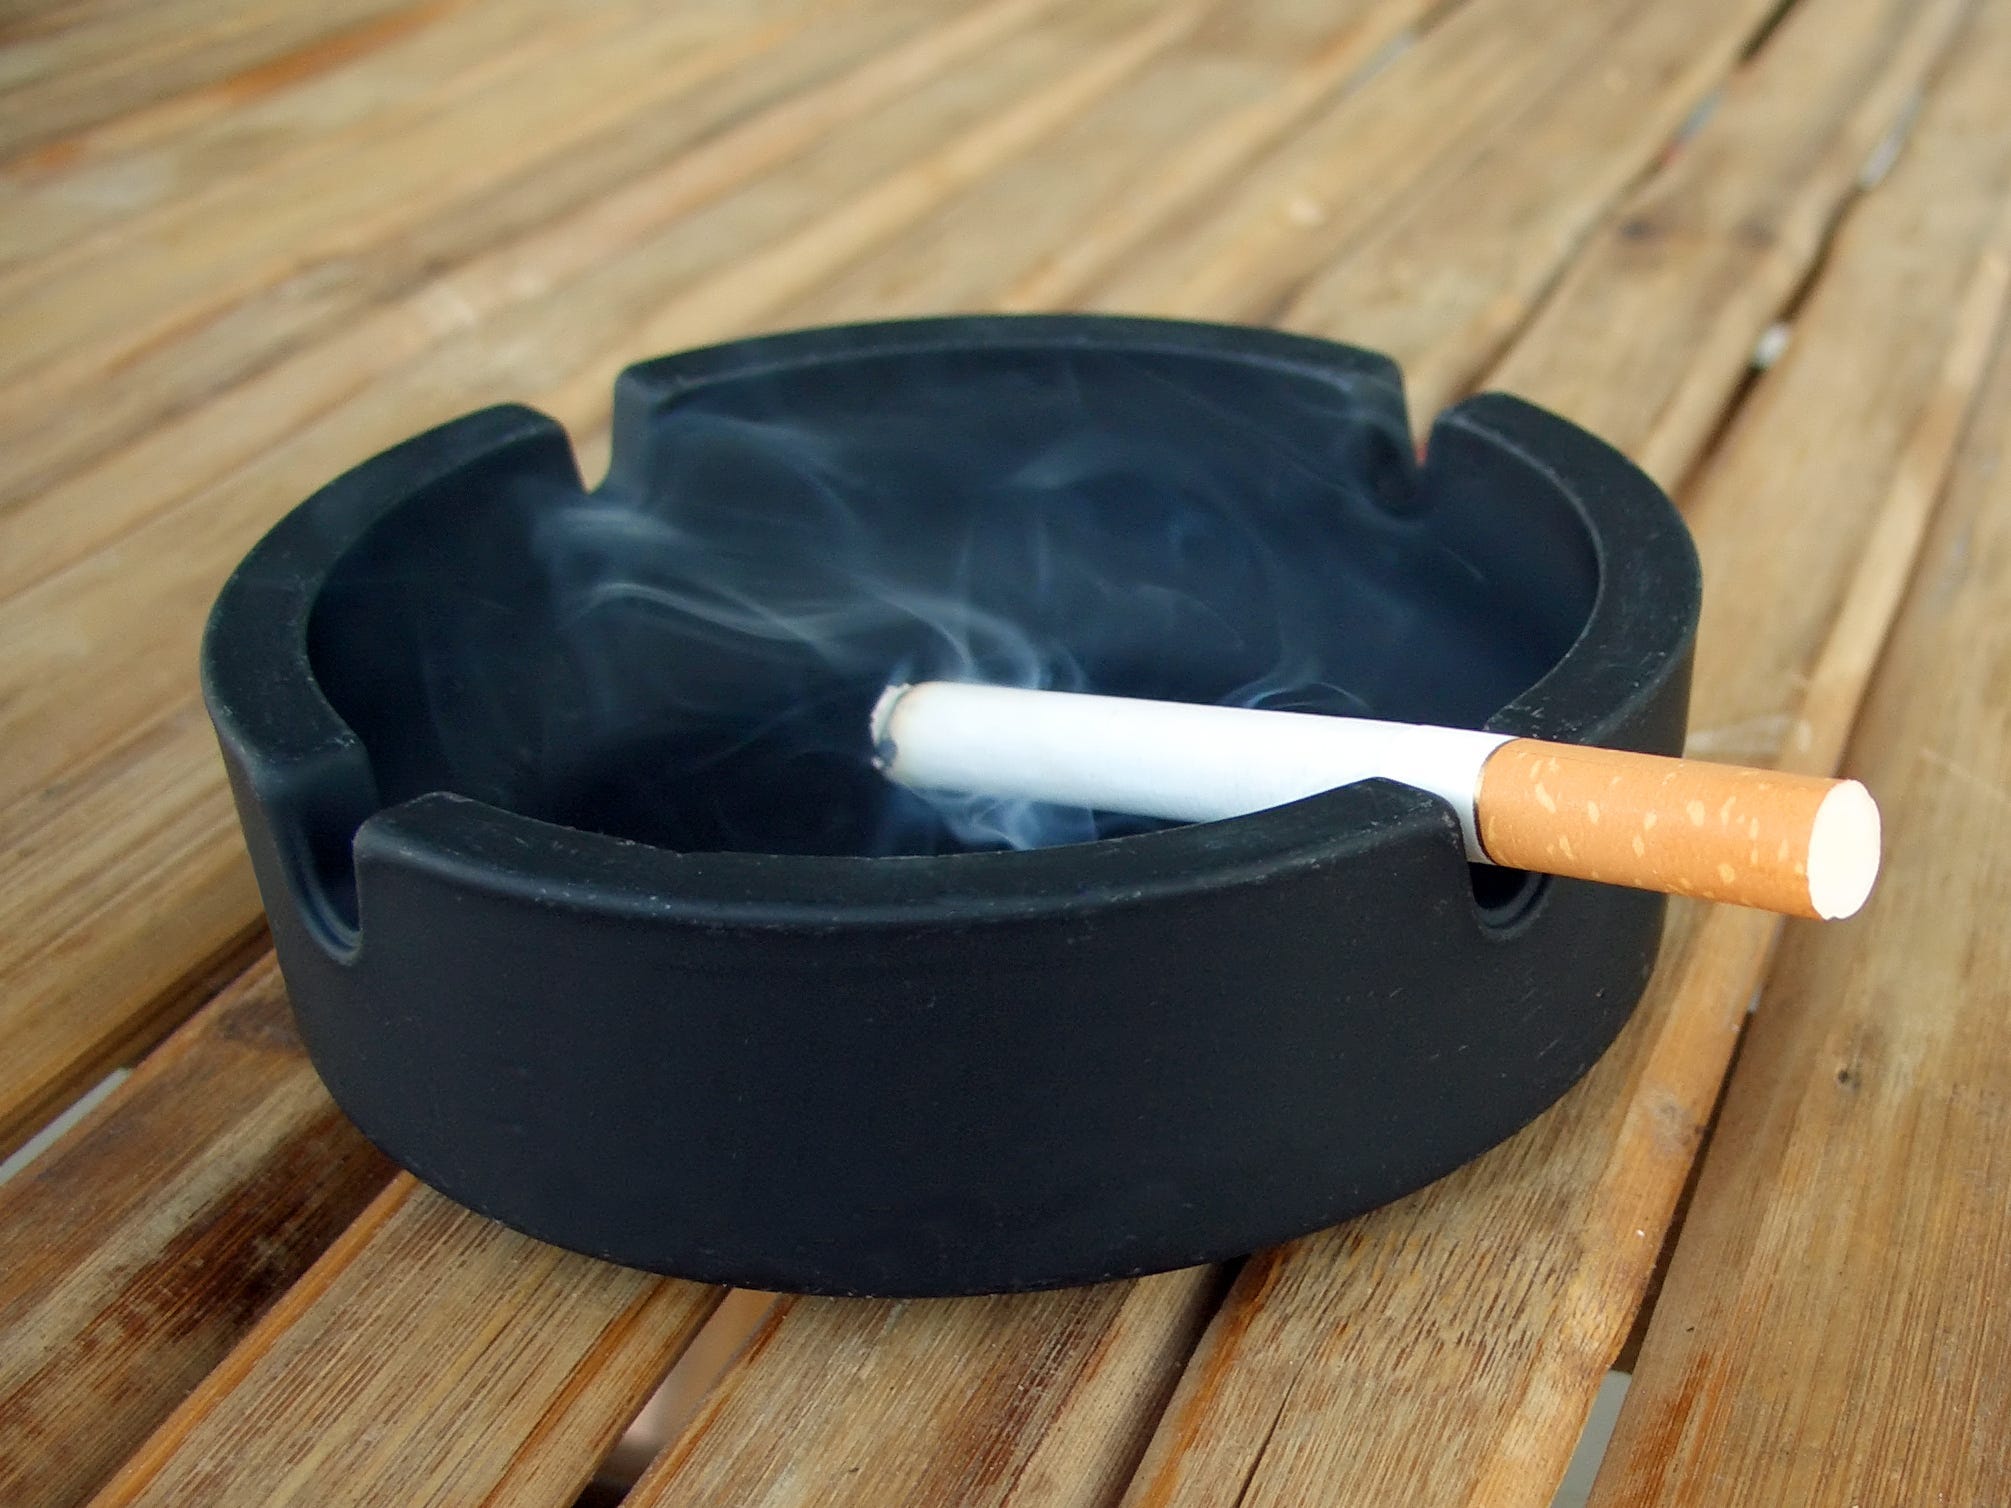 Ein schwarzer Aschenbecher auf einem Holztisch mit einer rauchenden Zigarette darauf.